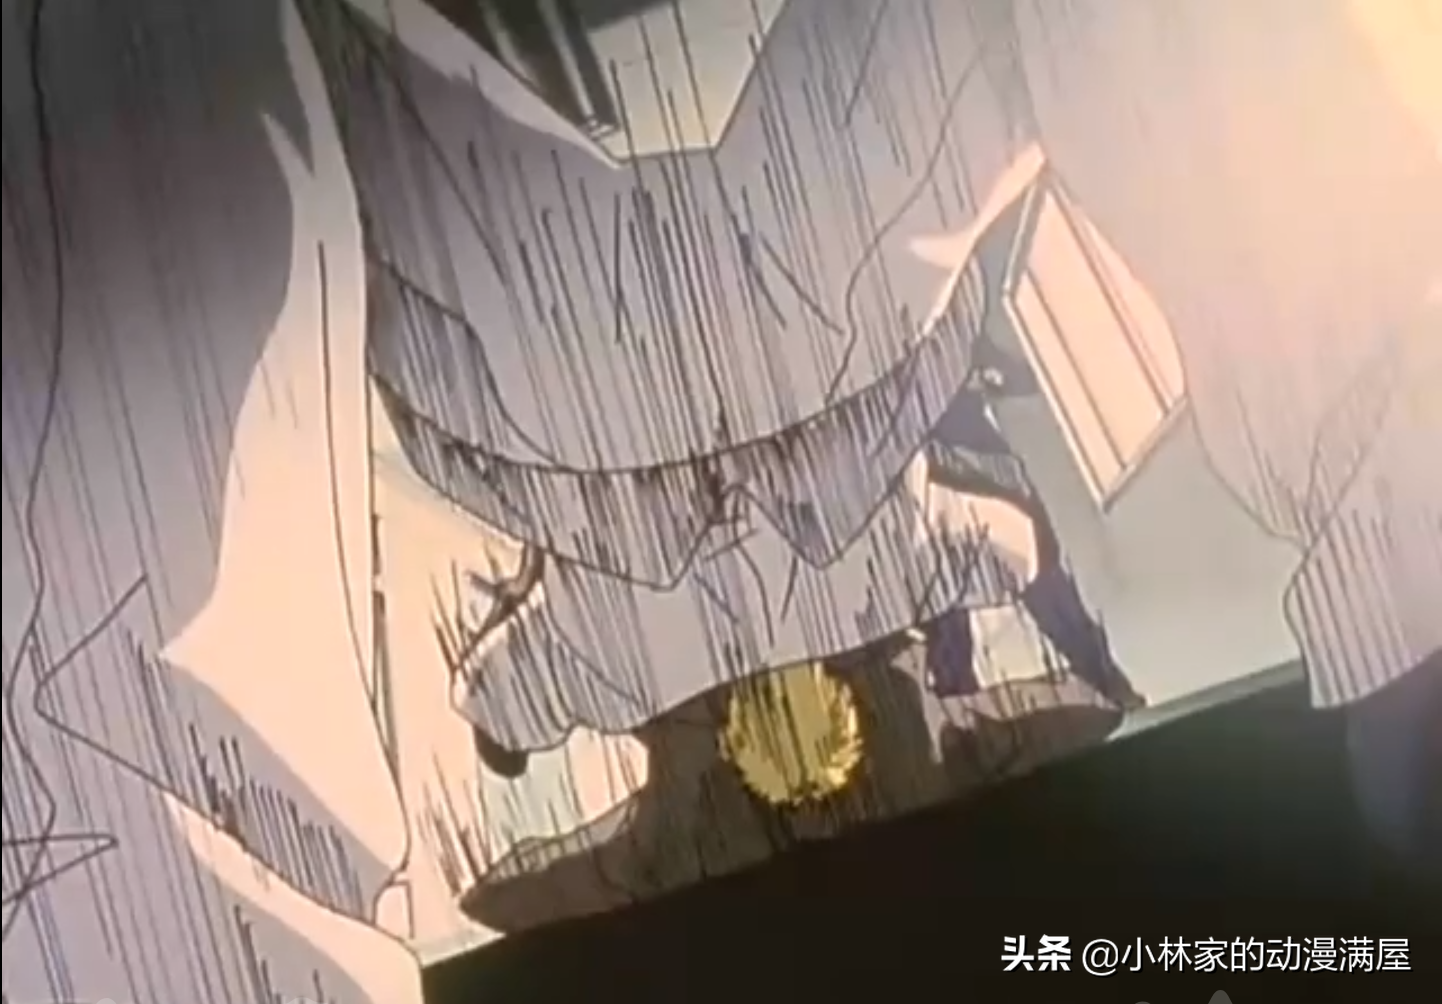 B站9.8分的老動畫，日本版《終極教師》，這種老師誰不喜歡？